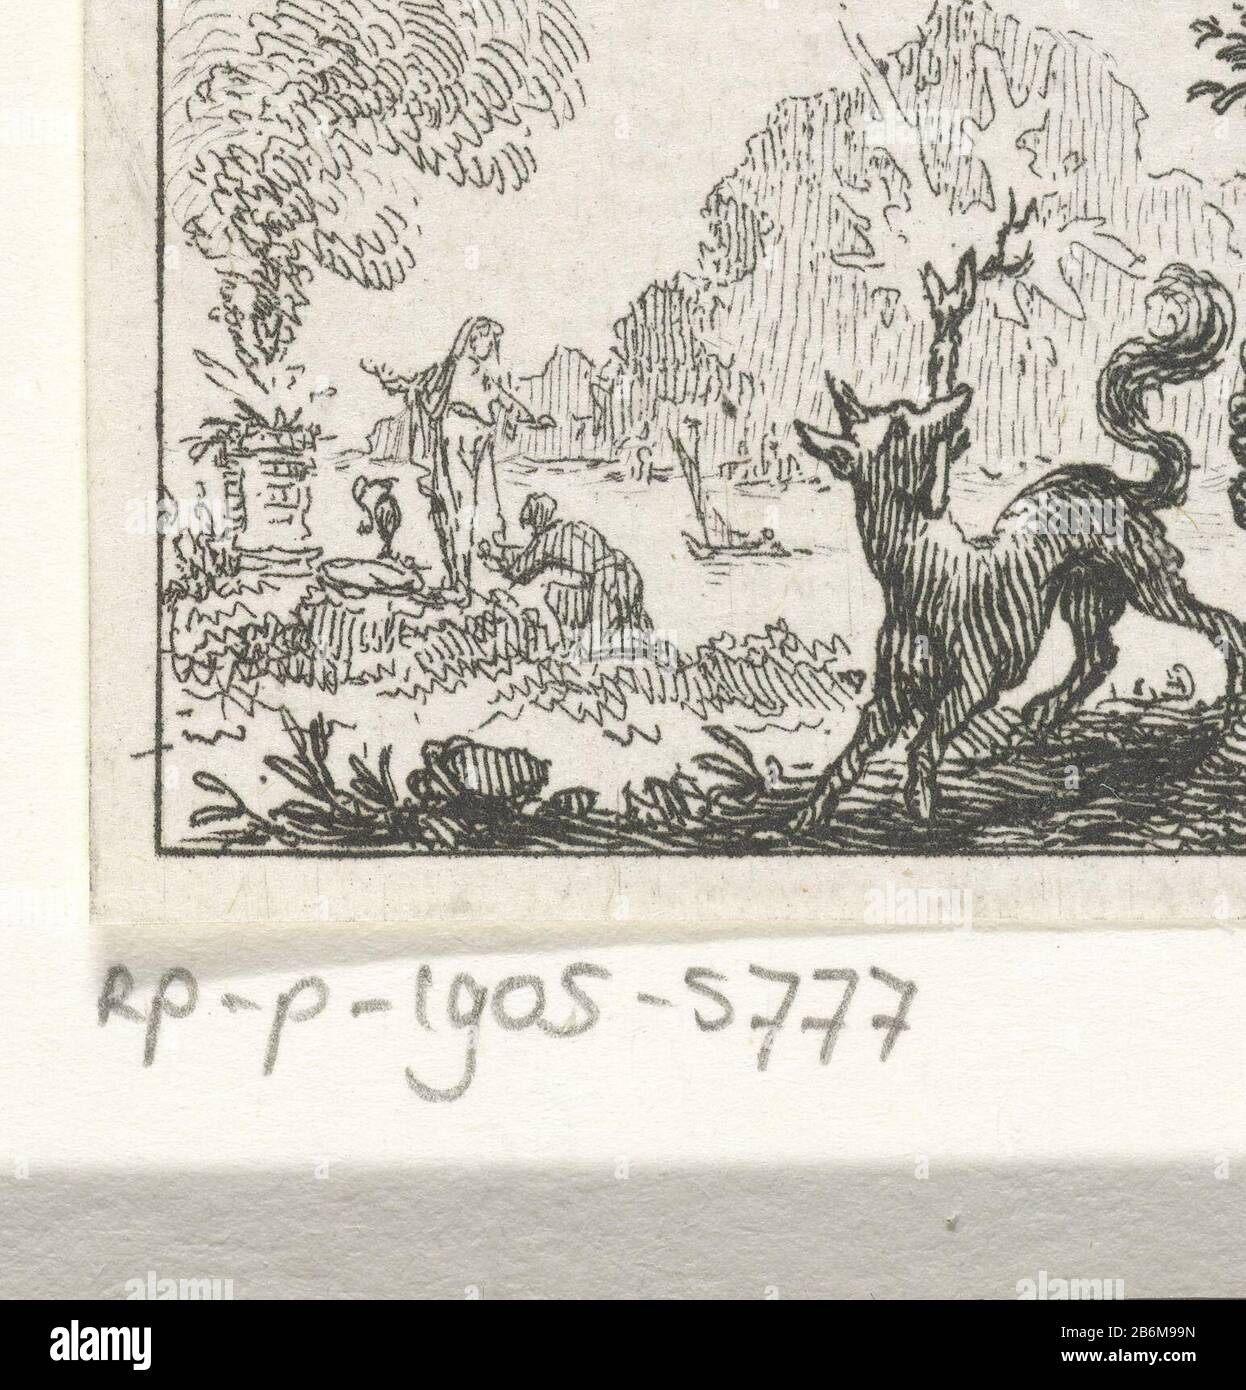 Fabel van de vos en de arend illustraties voor fabelvertellingen van  Phaedrus (serietitel) un renard avec une torche brûlante dans sa bouche  regarde un aigle dans un arbre. Cette illustration est faite